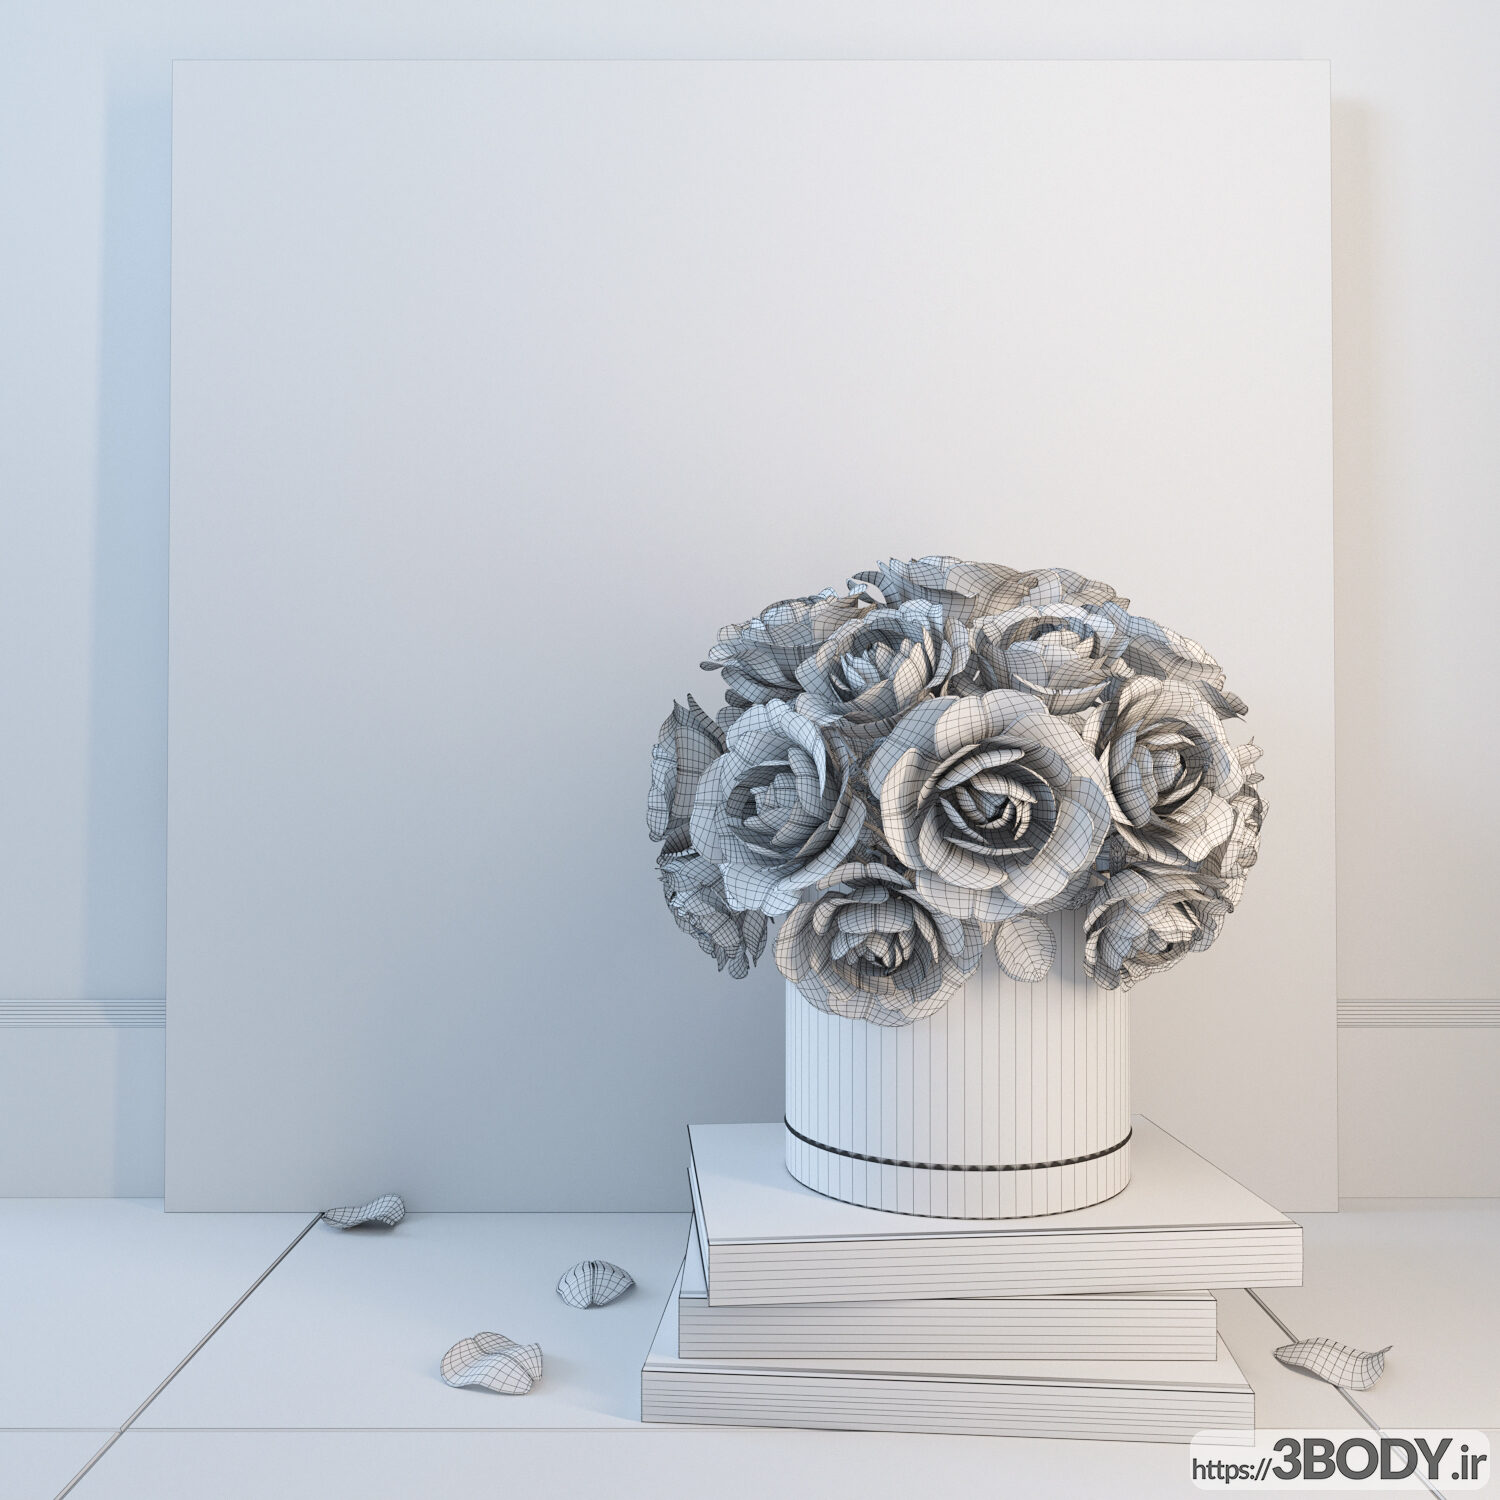 مدل سه بعدی ست تزئینی با گلهای رز سفید عکس 2